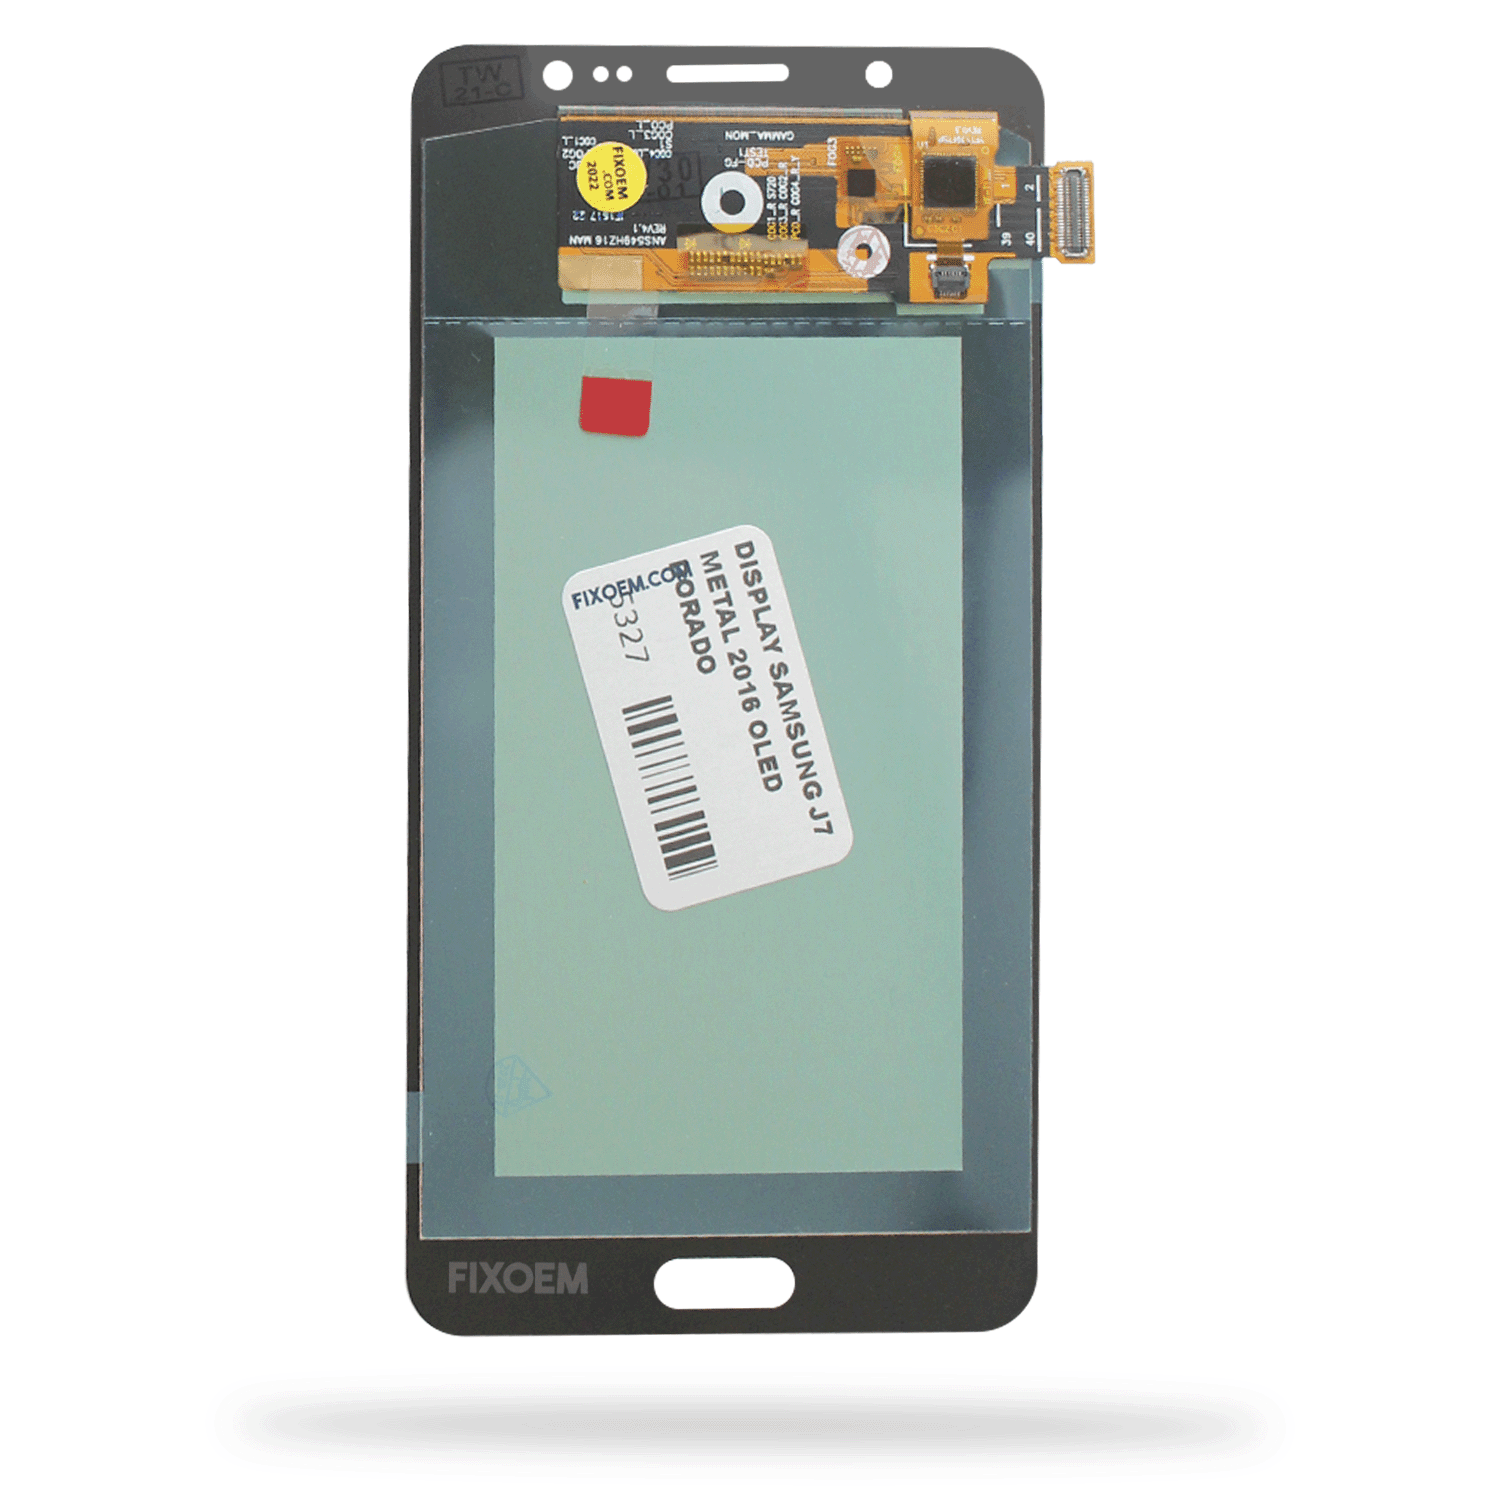 Display Samsung J7 Metal 2016 Oled Sm-J710m a solo $ 530.00 Refaccion y puestos celulares, refurbish y microelectronica.- FixOEM